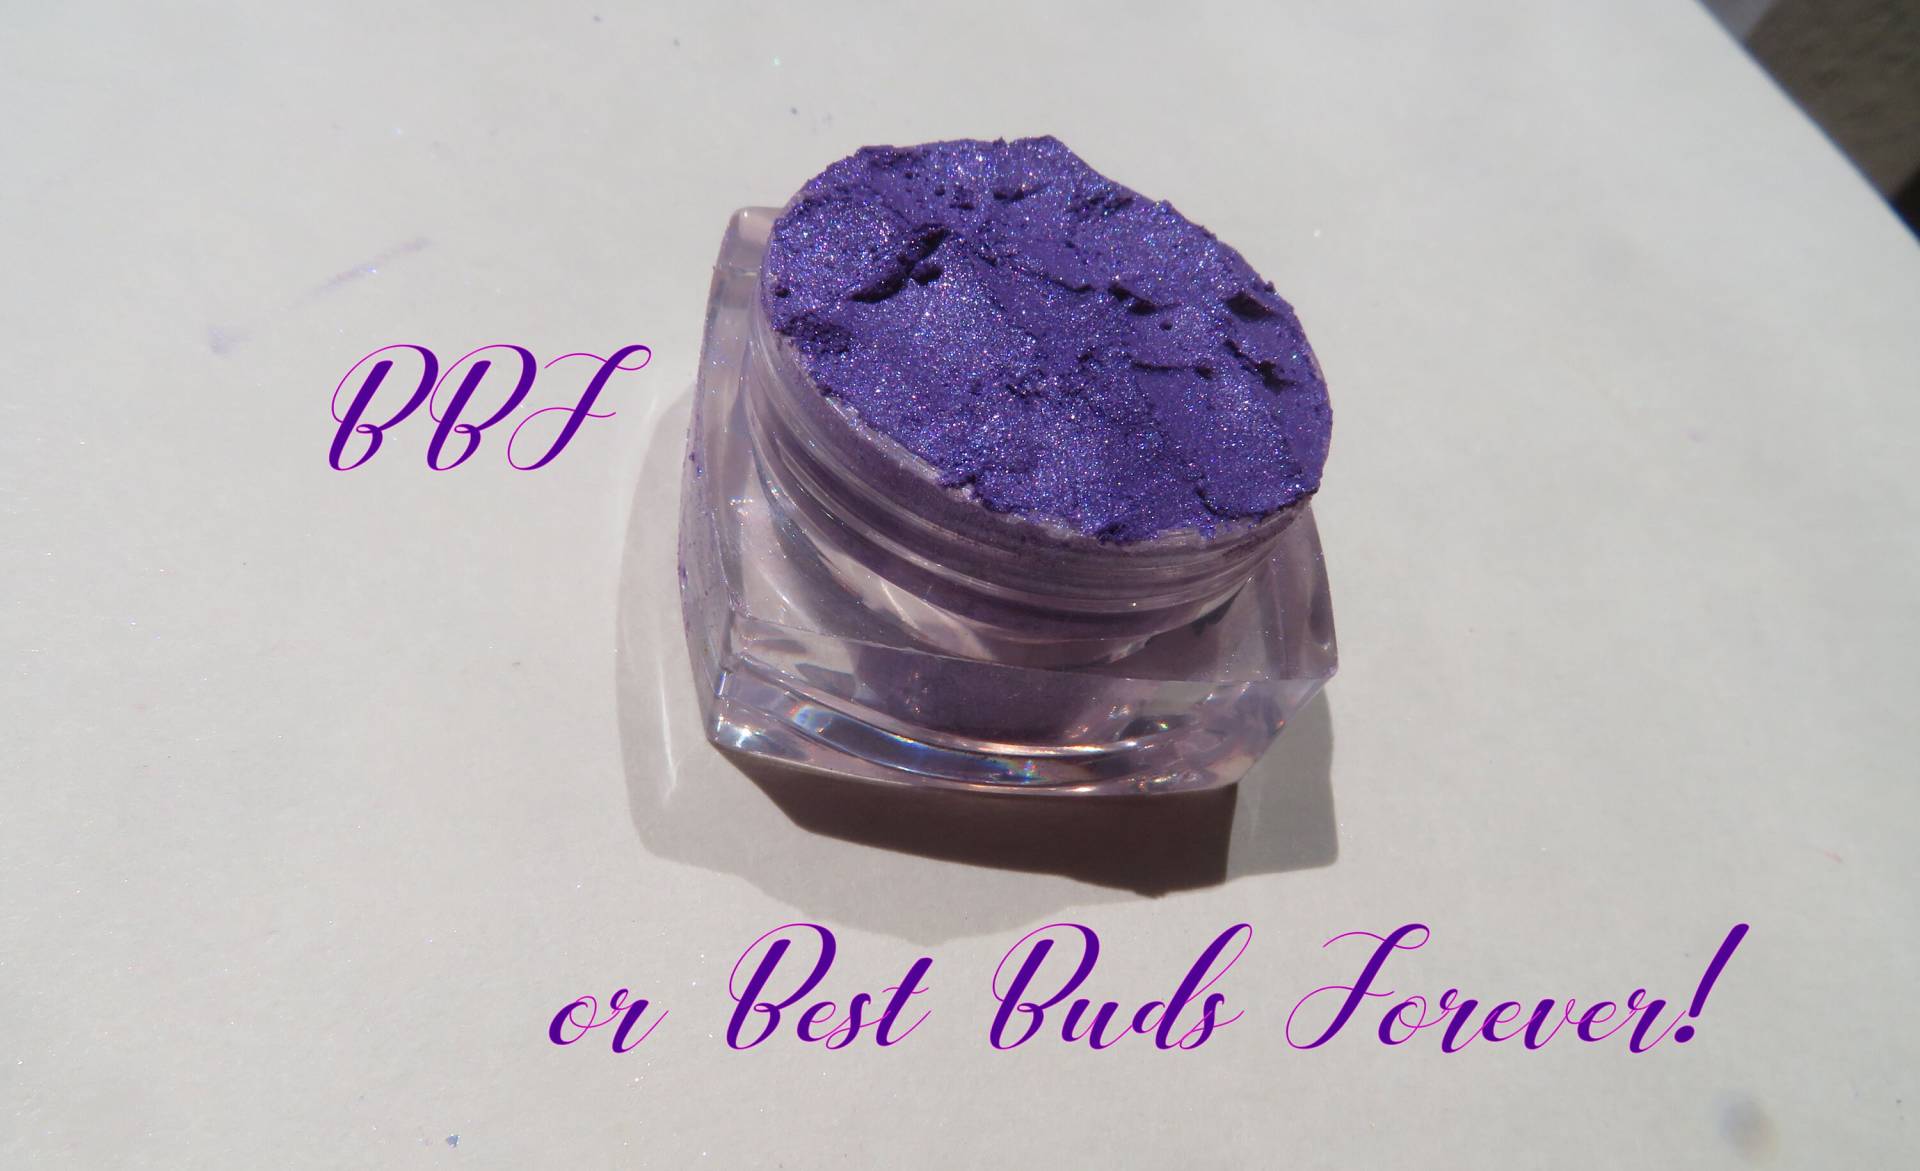 Bbf - Heller Purpur-Blau Schimmernder Mineral-Lidschatten, Lose Pigment-Trauerei, Veganer Mineral-Lidschatten von kmms